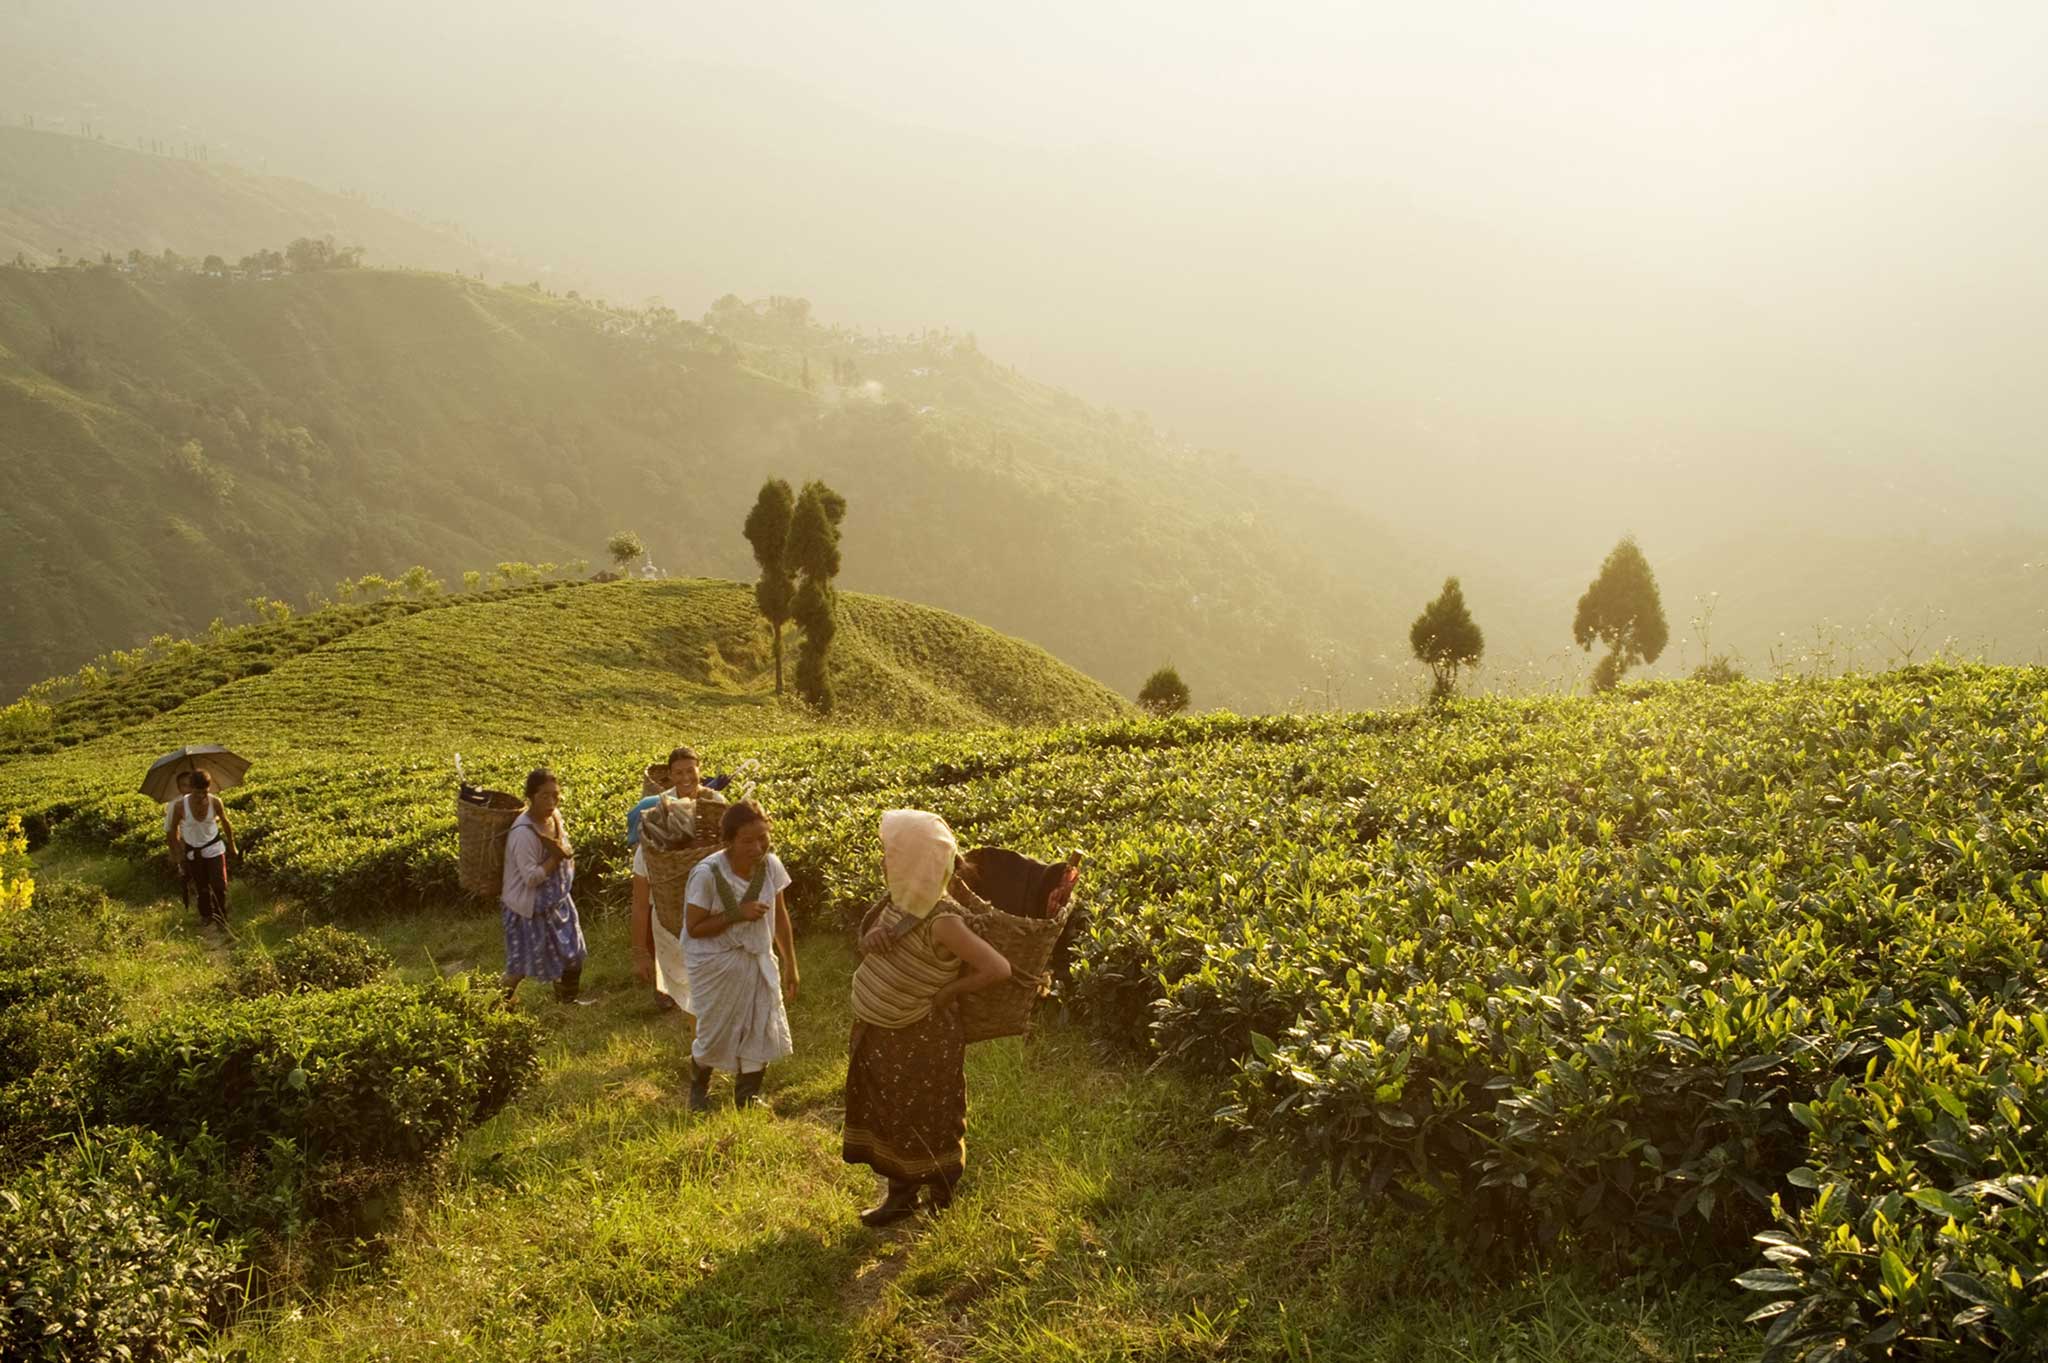 Heart of darkness: tea pickers in West Bengal